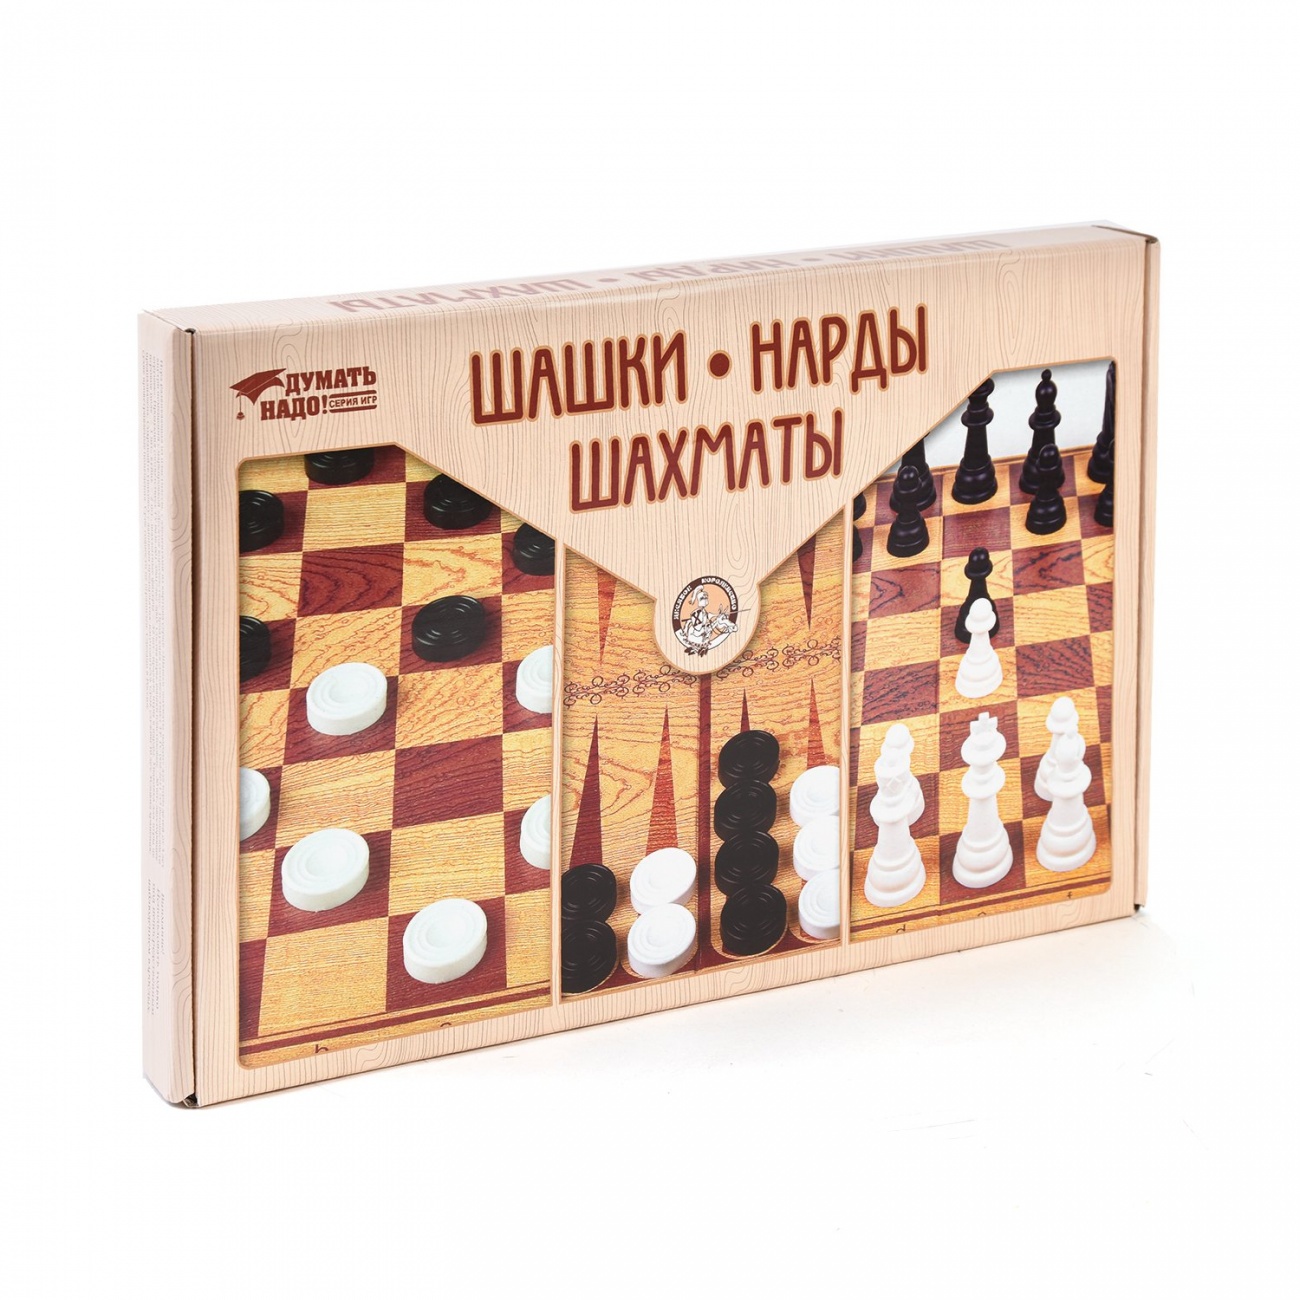 Игра настольная "Шашки, нарды, шахматы" (большие) Десятое королевство 03872ДК